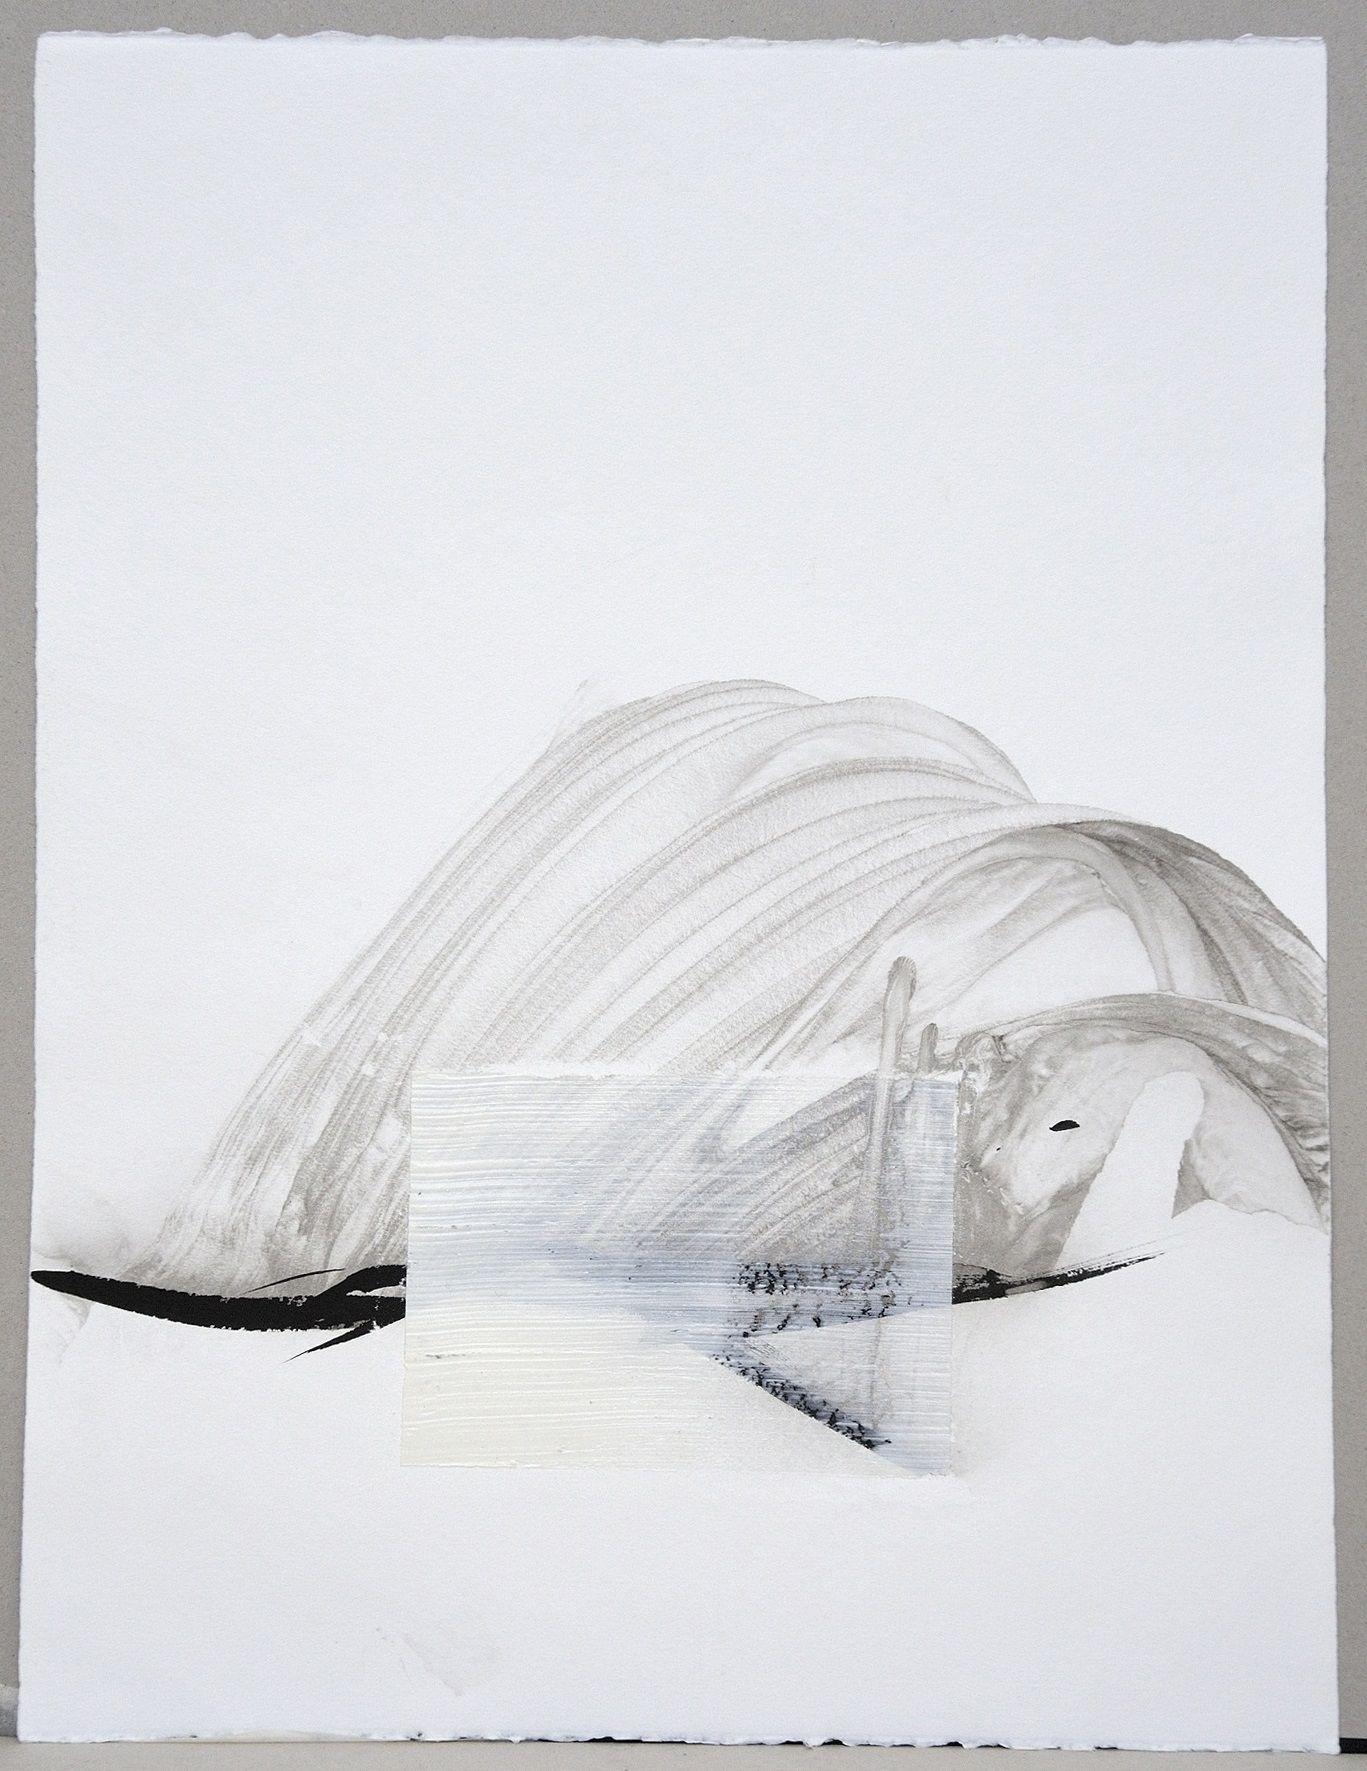 Permanescence N495 est une peinture unique à l'encre et à l'acrylique sur papier de l'artiste contemporain japonais Hachiro Kanno, dont les dimensions sont de 65 × 50 cm (25,6 × 19,7 in). 
L'œuvre est signée, vendue non encadrée et accompagnée d'un